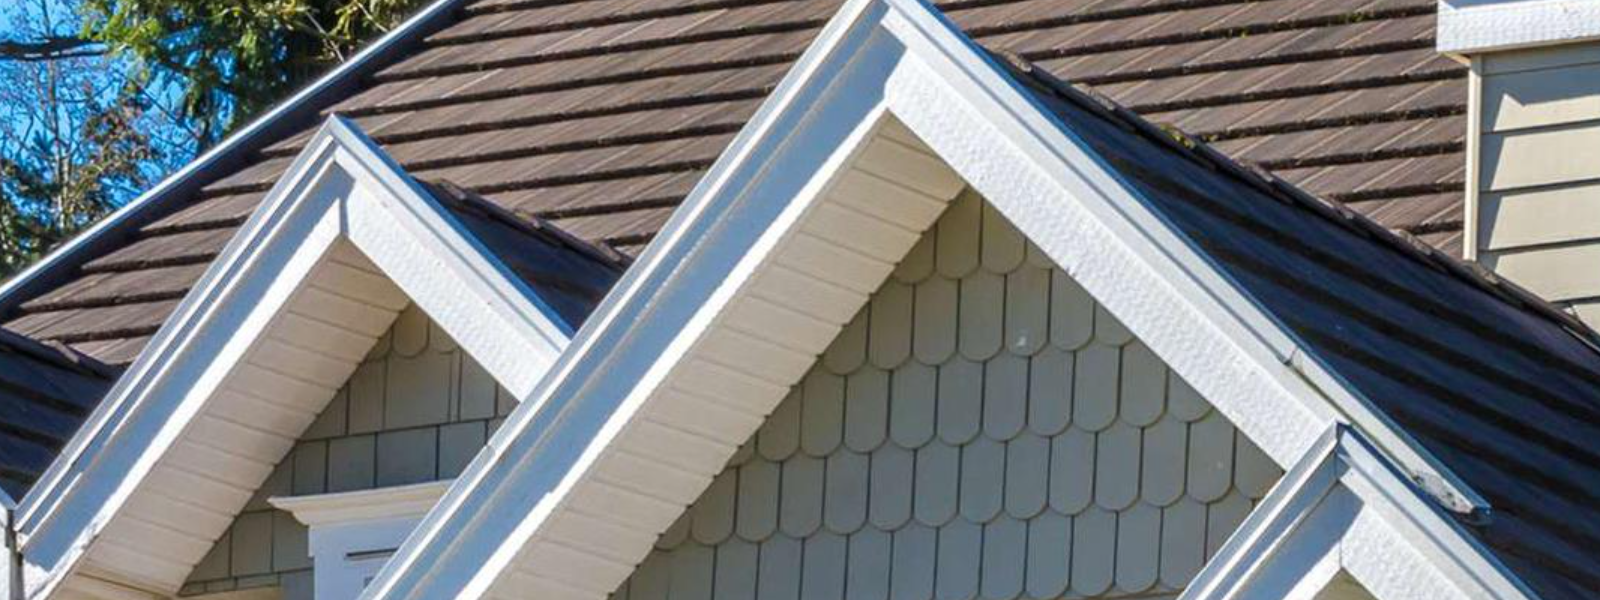 TK KATUSED OÜ - Kvaliteetsed katusetööd, sealhulgas viilkatuste renoveerimine, katuseakende, vihmaveesüsteemide ja tur...